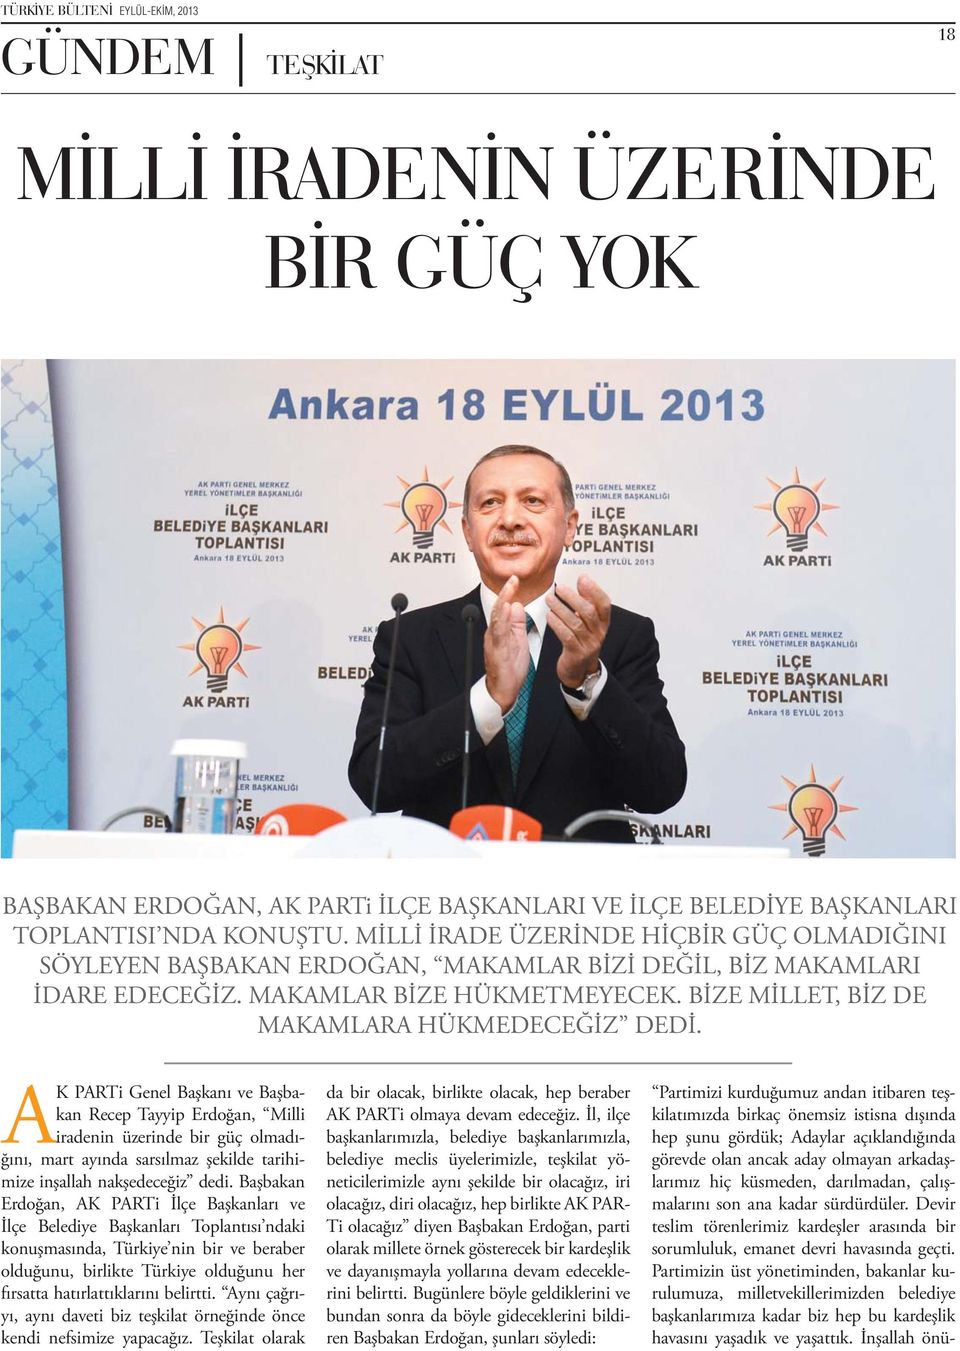 AK PARTi Genel Başkanı ve Başbakan Recep Tayyip Erdoğan, Milli iradenin üzerinde bir güç olmadığını, mart ayında sarsılmaz şekilde tarihimize inşallah nakşedeceğiz dedi.